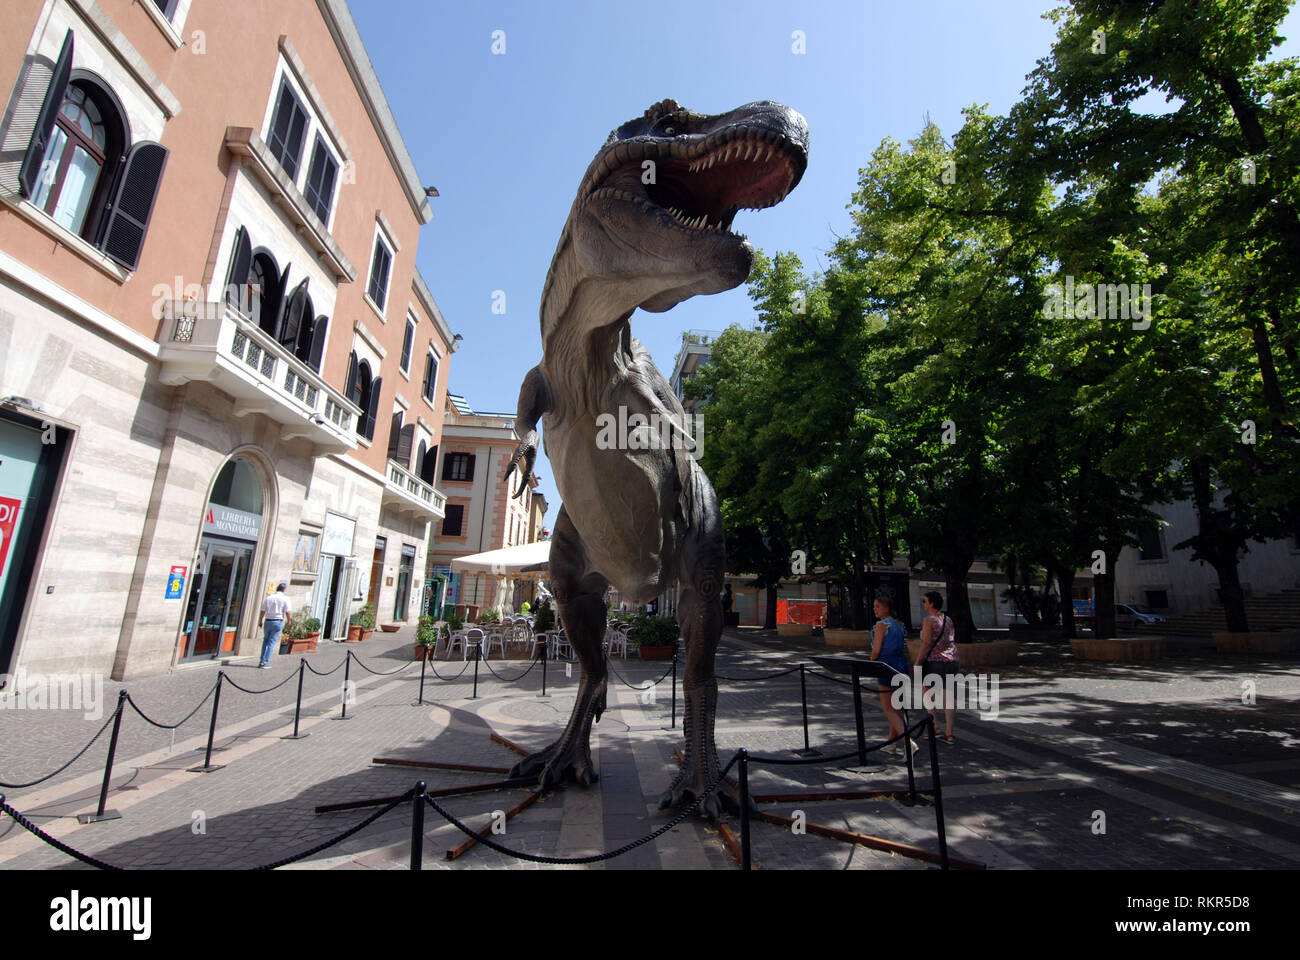 Les dinosaures marcher autour de la ville de reproduction à l'échelle 1:1 dinosaure tyrannosaurus rex exposés dans la ville de Cosenza Calabria Italie 2018 Banque D'Images